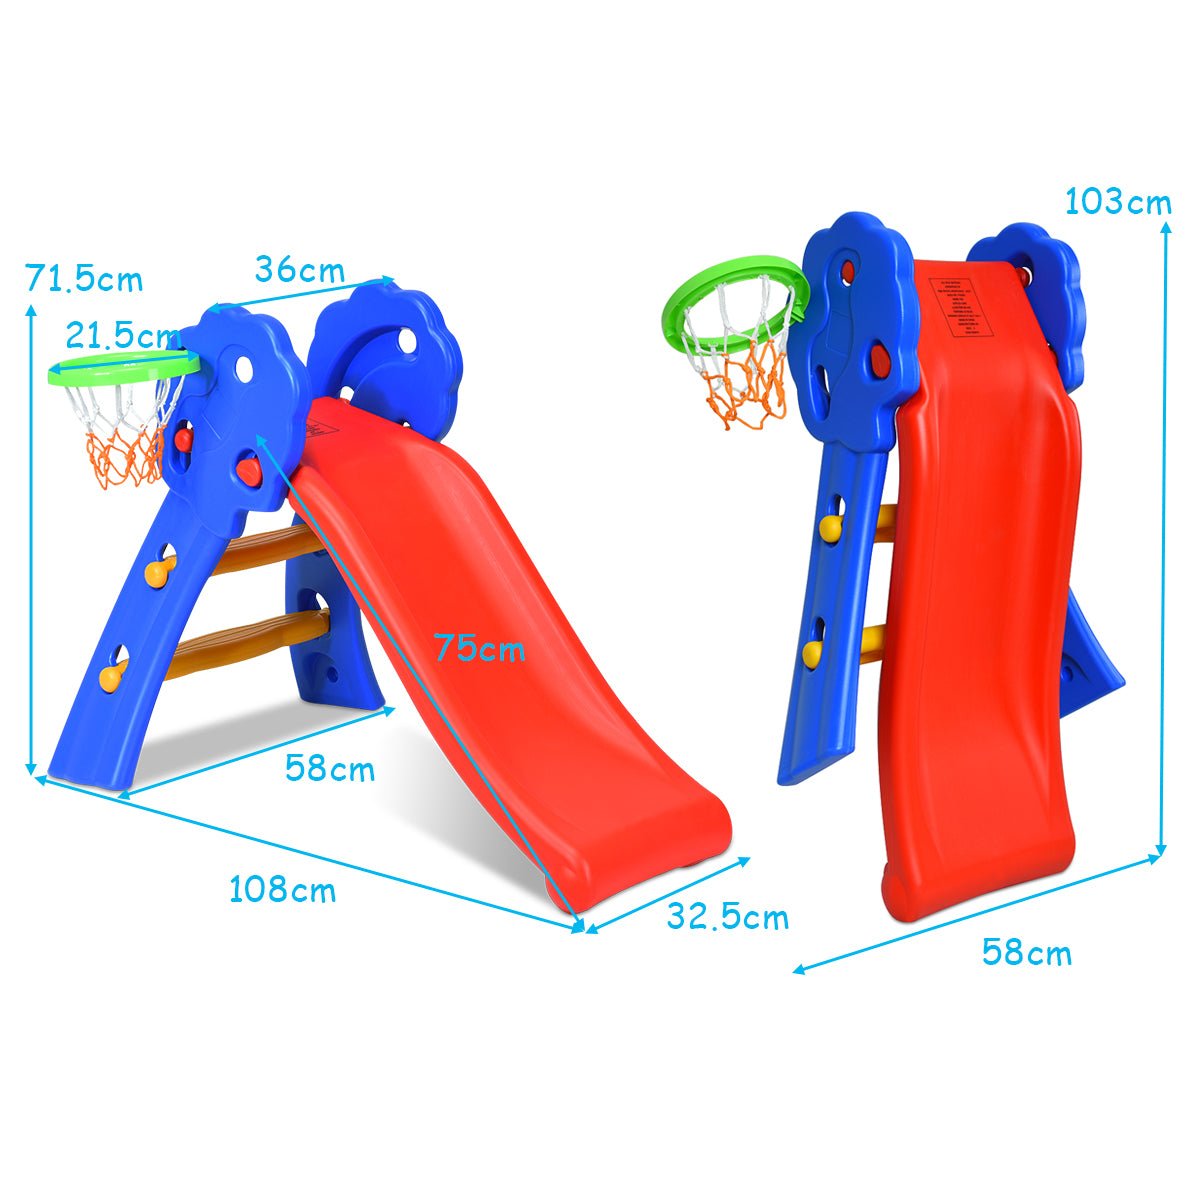 Buy the 2-Step Folding Slide with Basketball Hoop at Kids Mega Mart